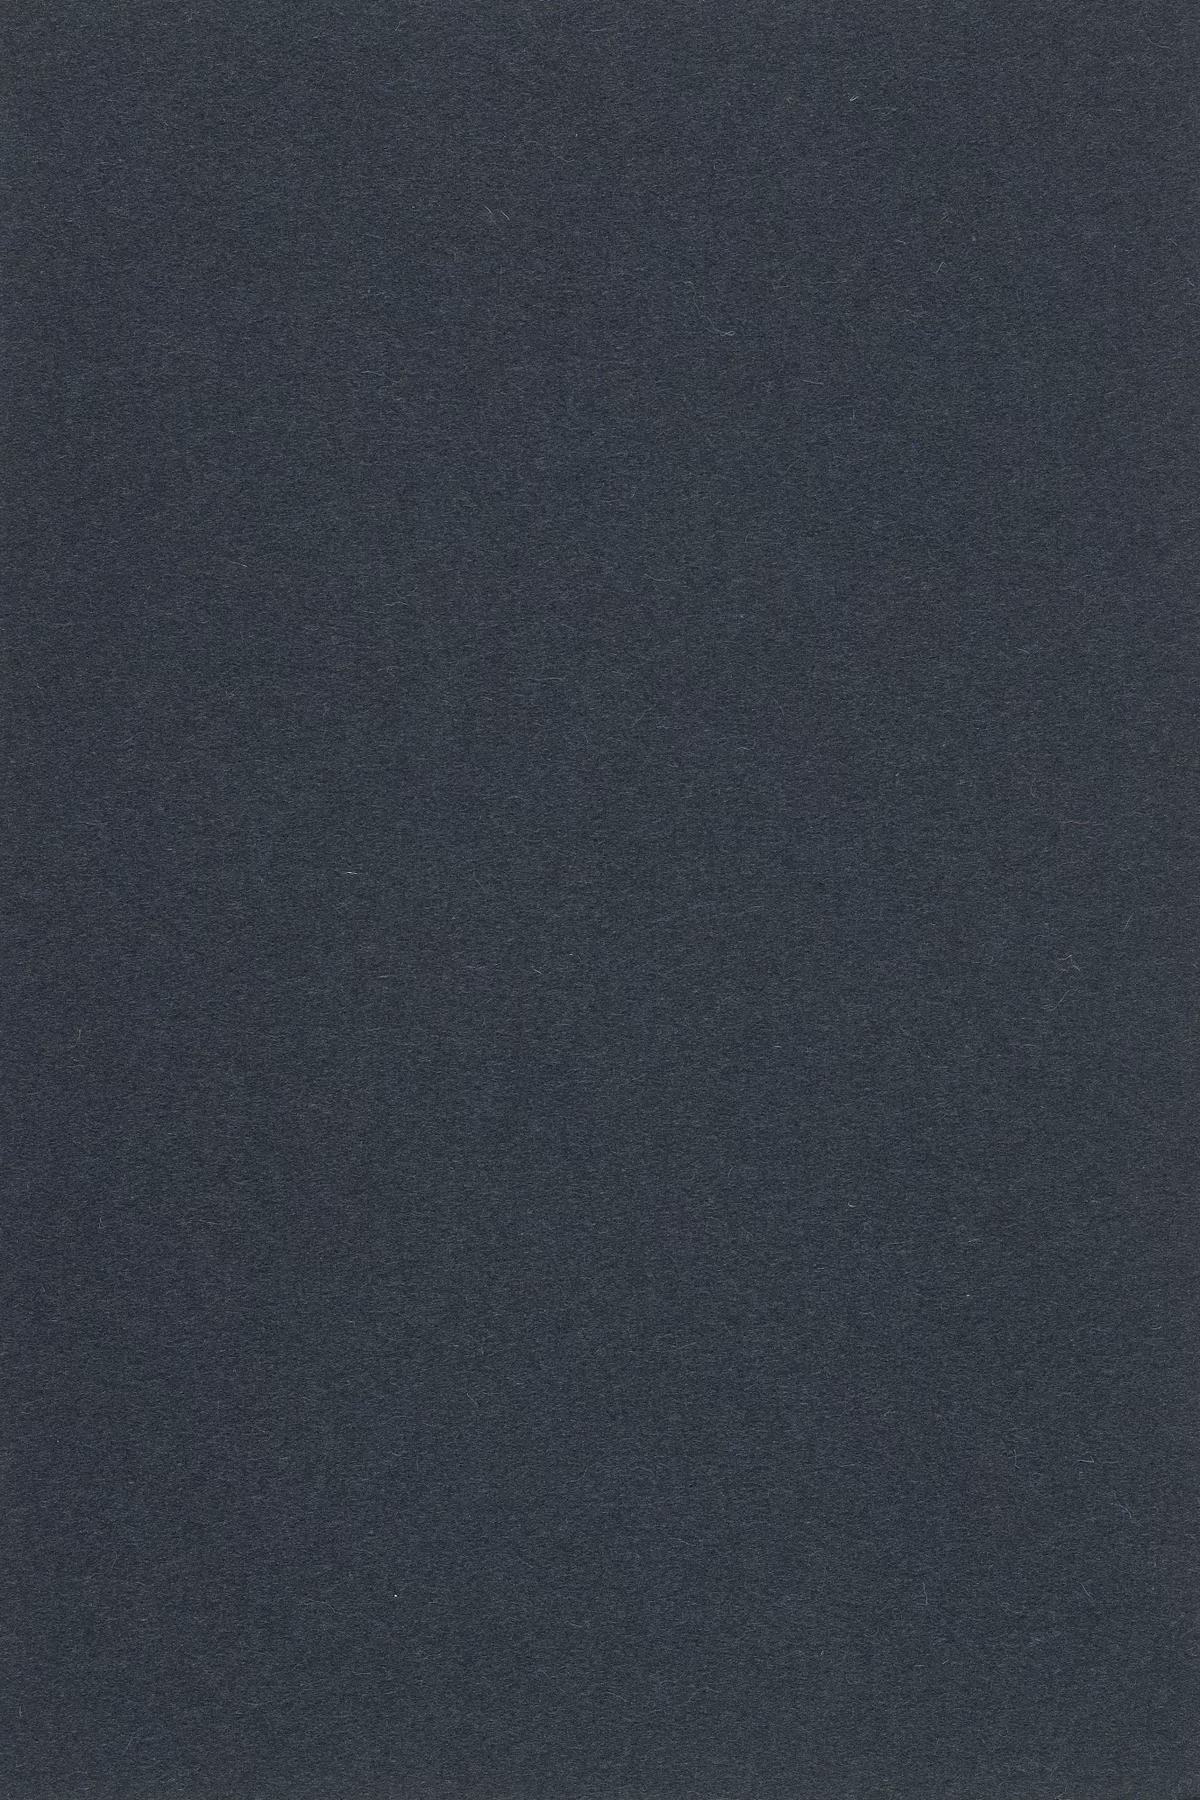 Fabric sample Divina 3 793 grey